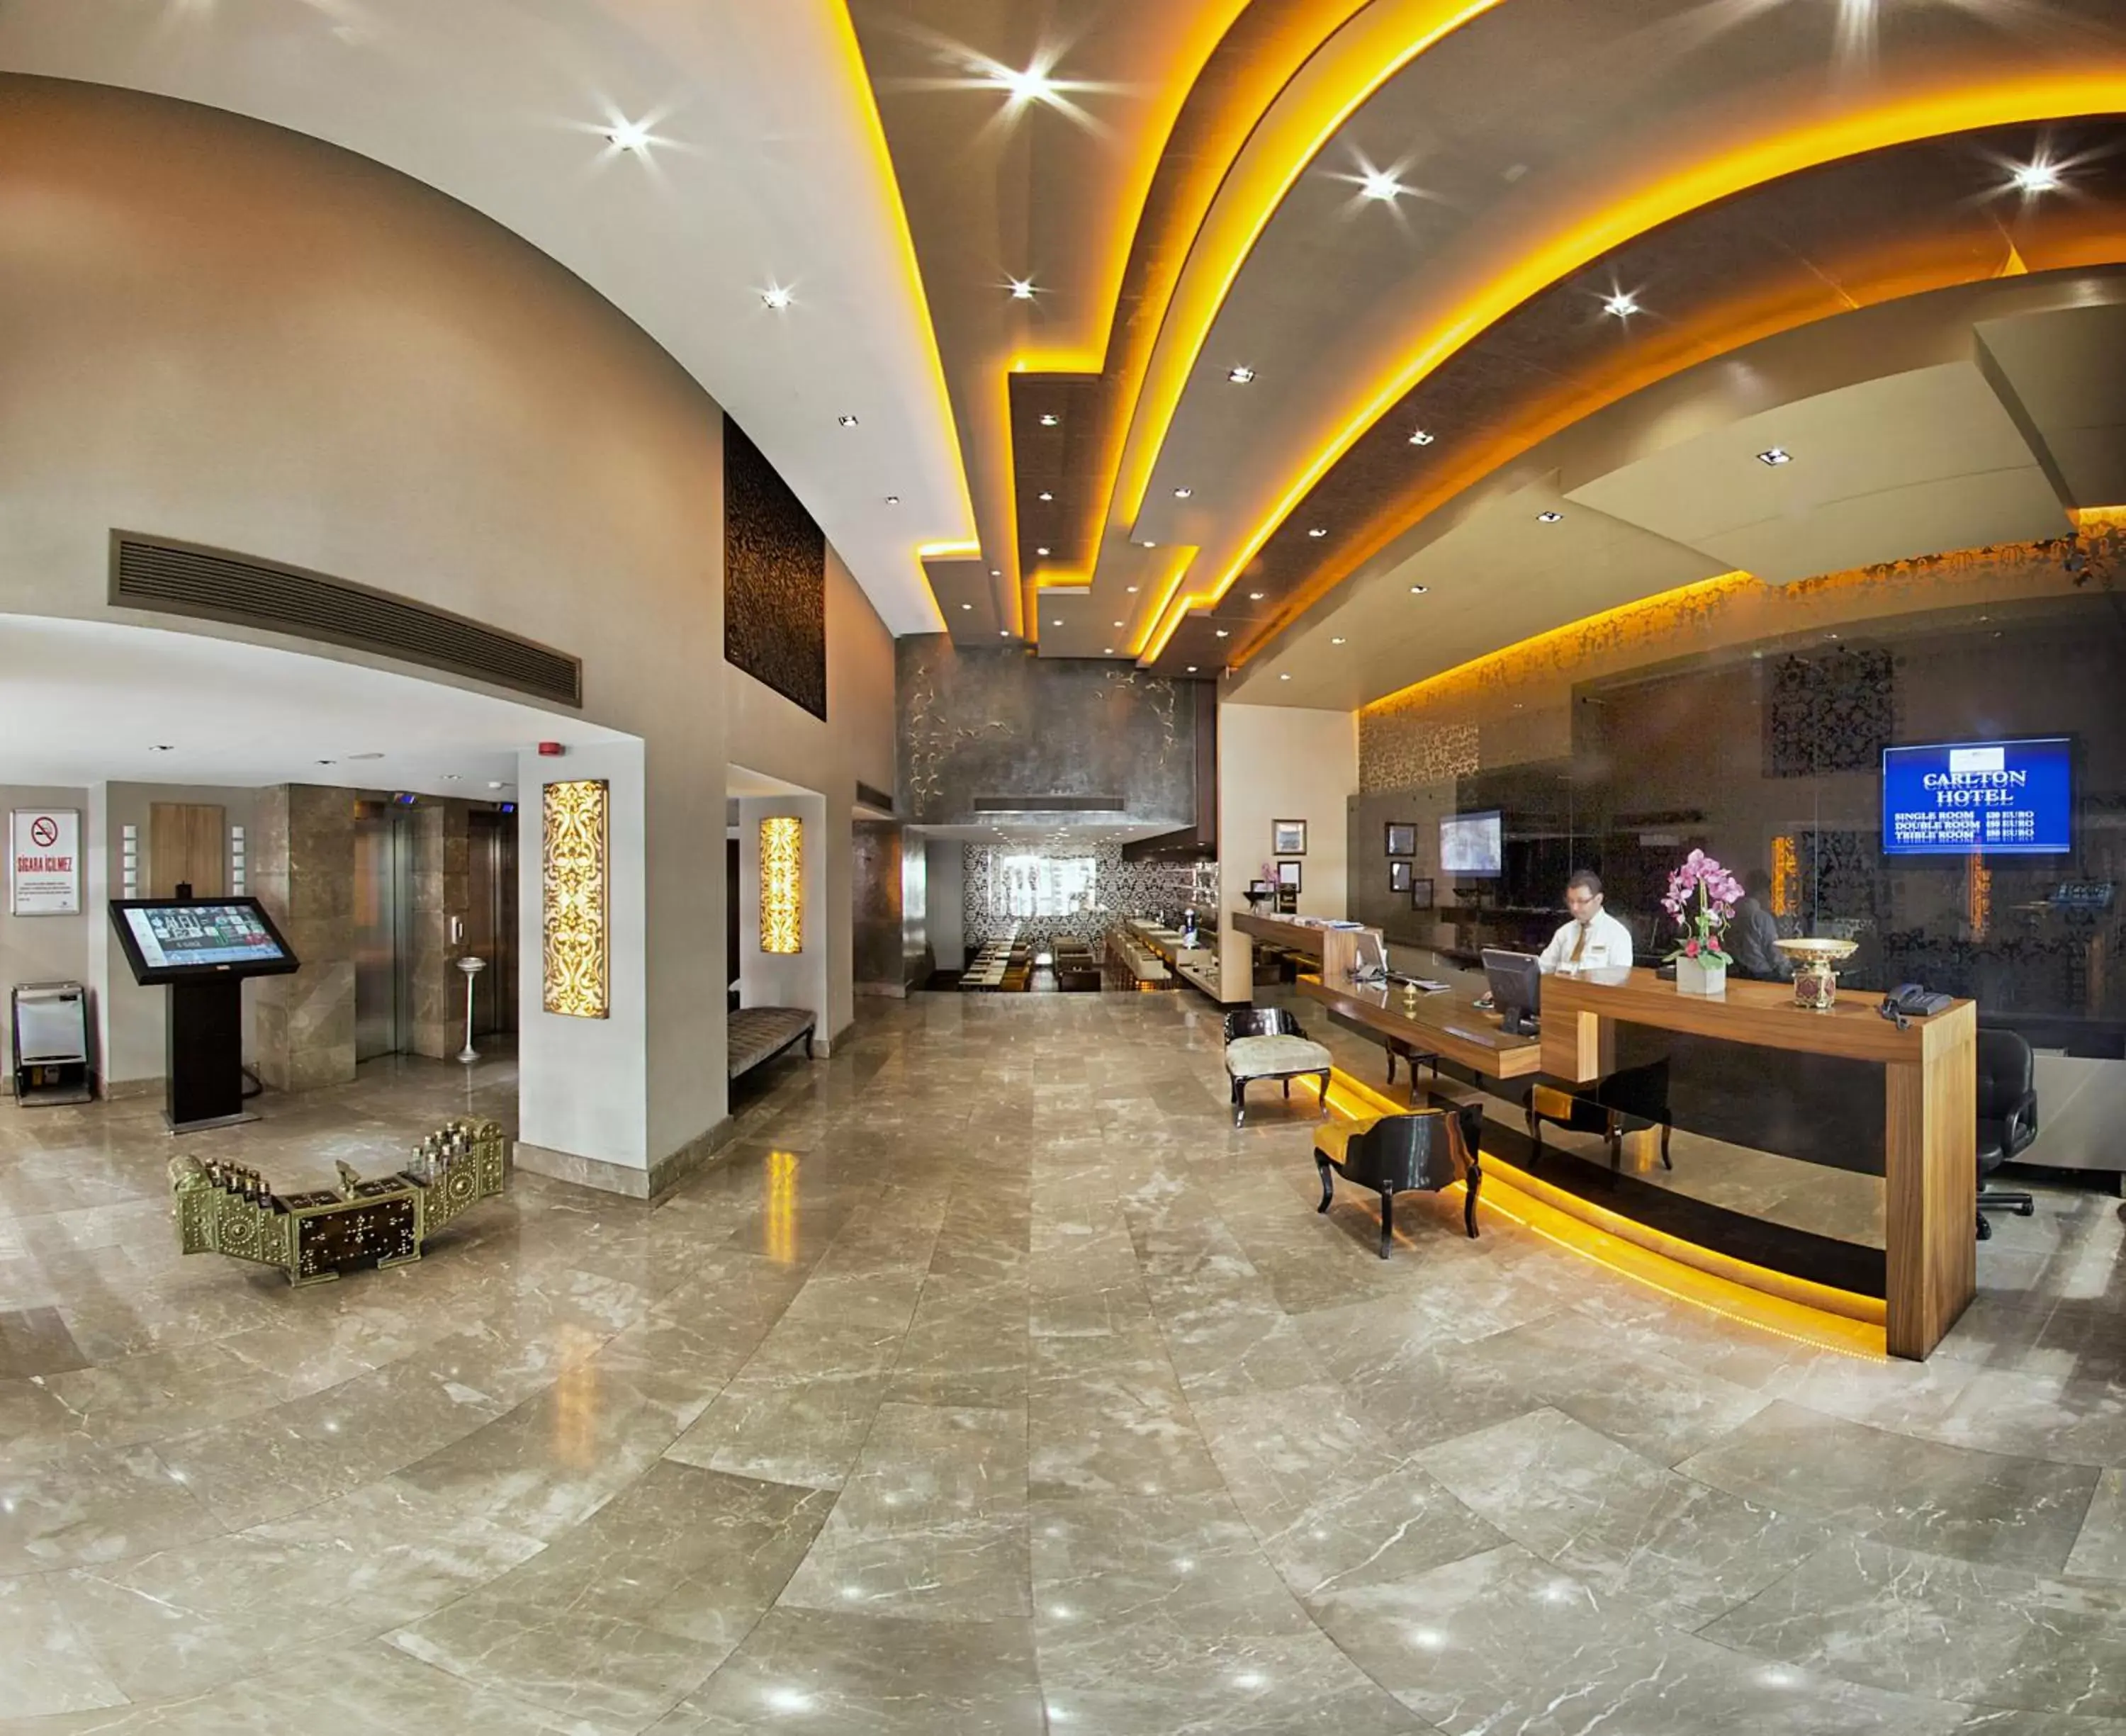 Lobby or reception, Lobby/Reception in Carlton Hotel